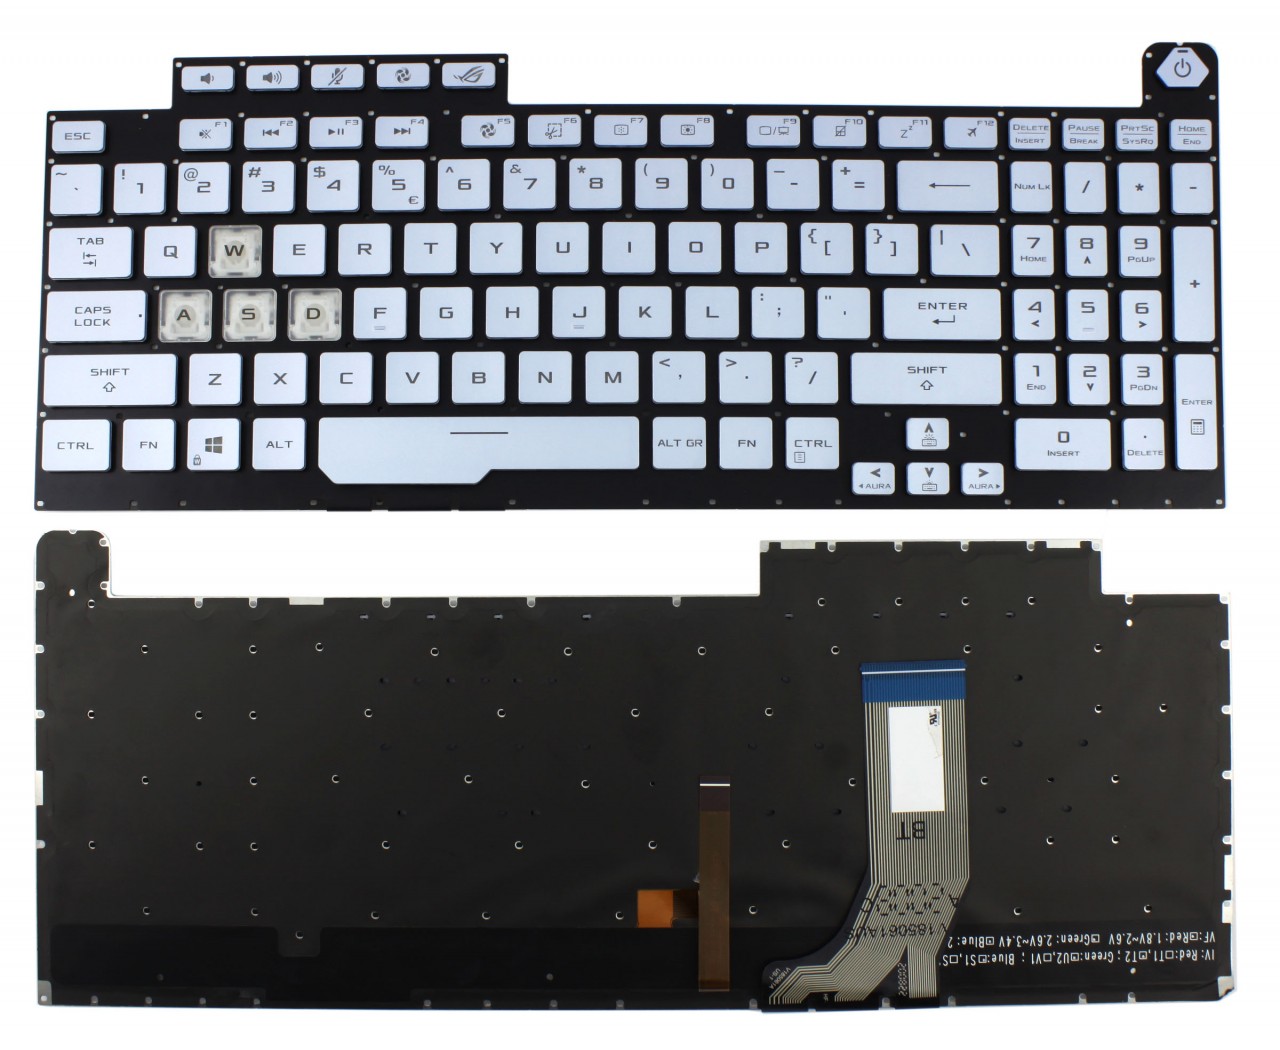 Tastatura Albastra Asus 0KNR0-6813US00 iluminata layout US fara rama enter mic image0